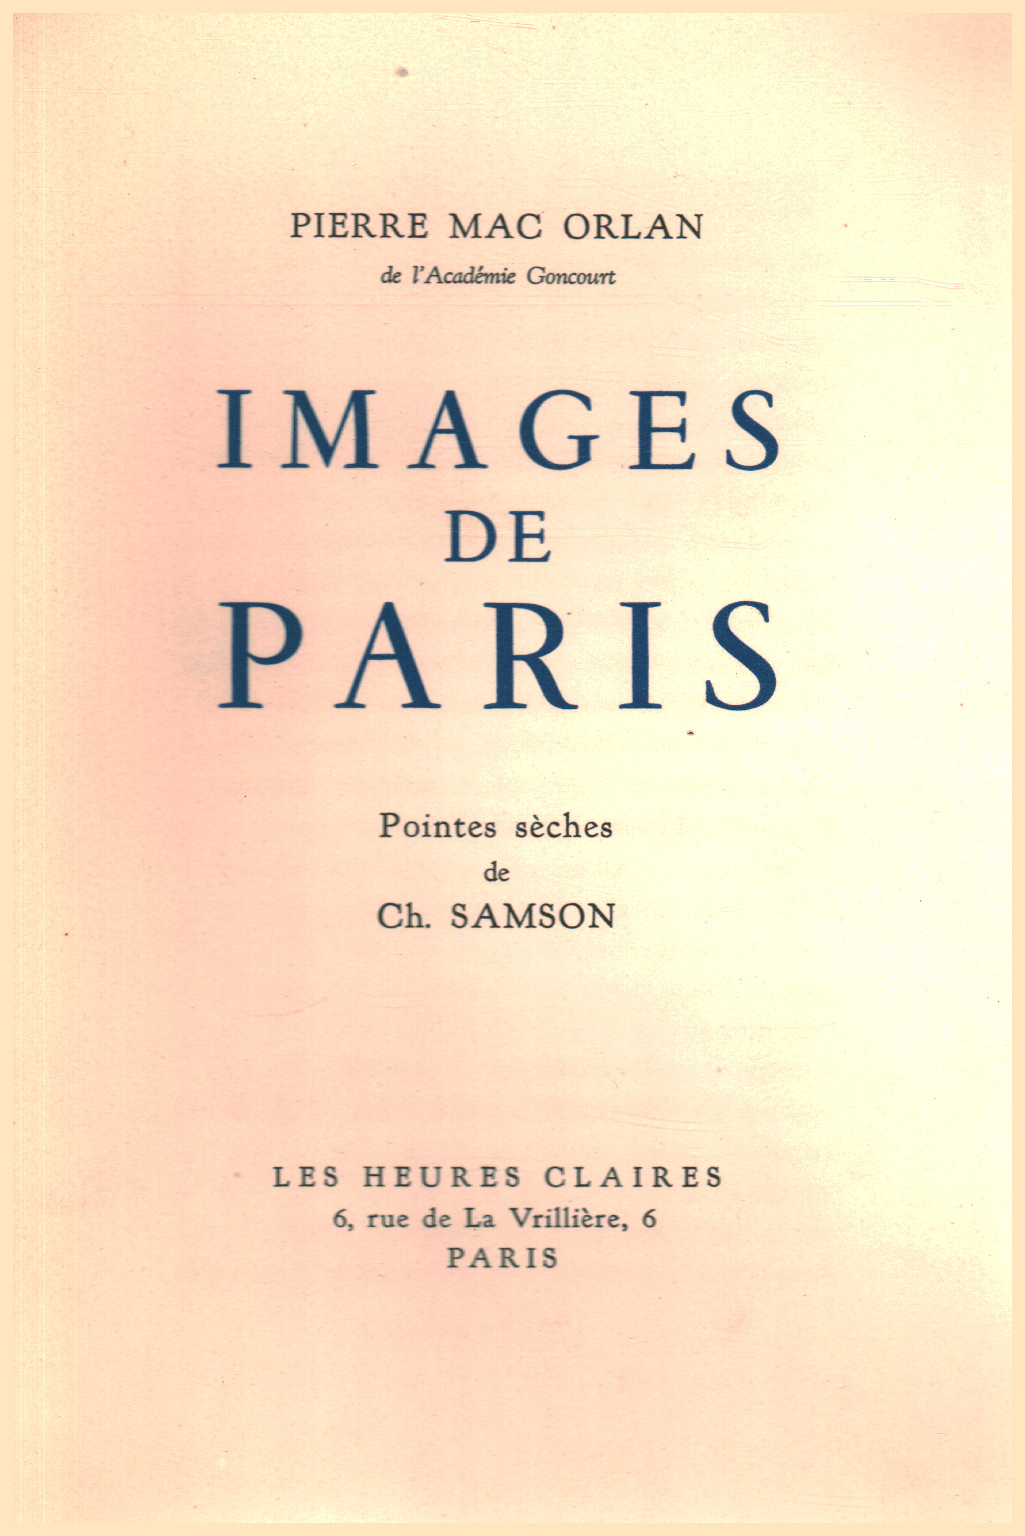 Images de Paris, s.a.